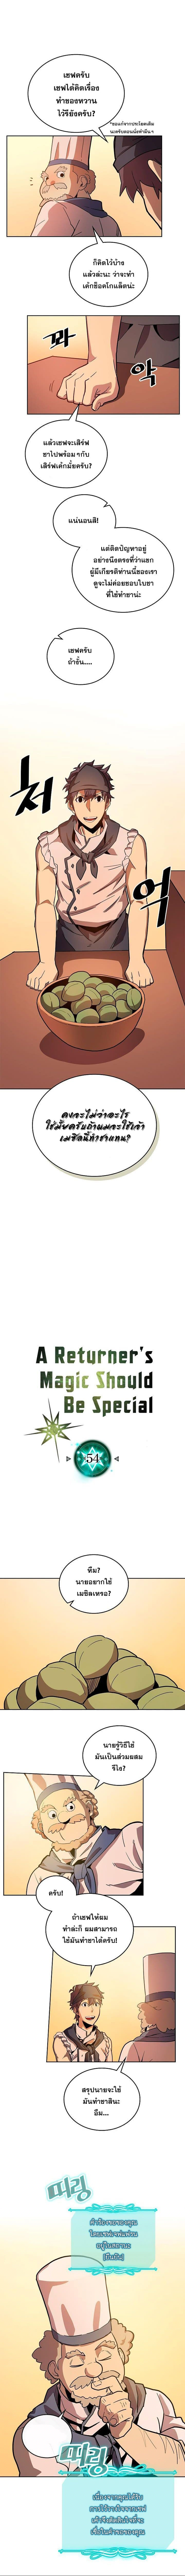 A Returner’s Magic Should Be Special54 02